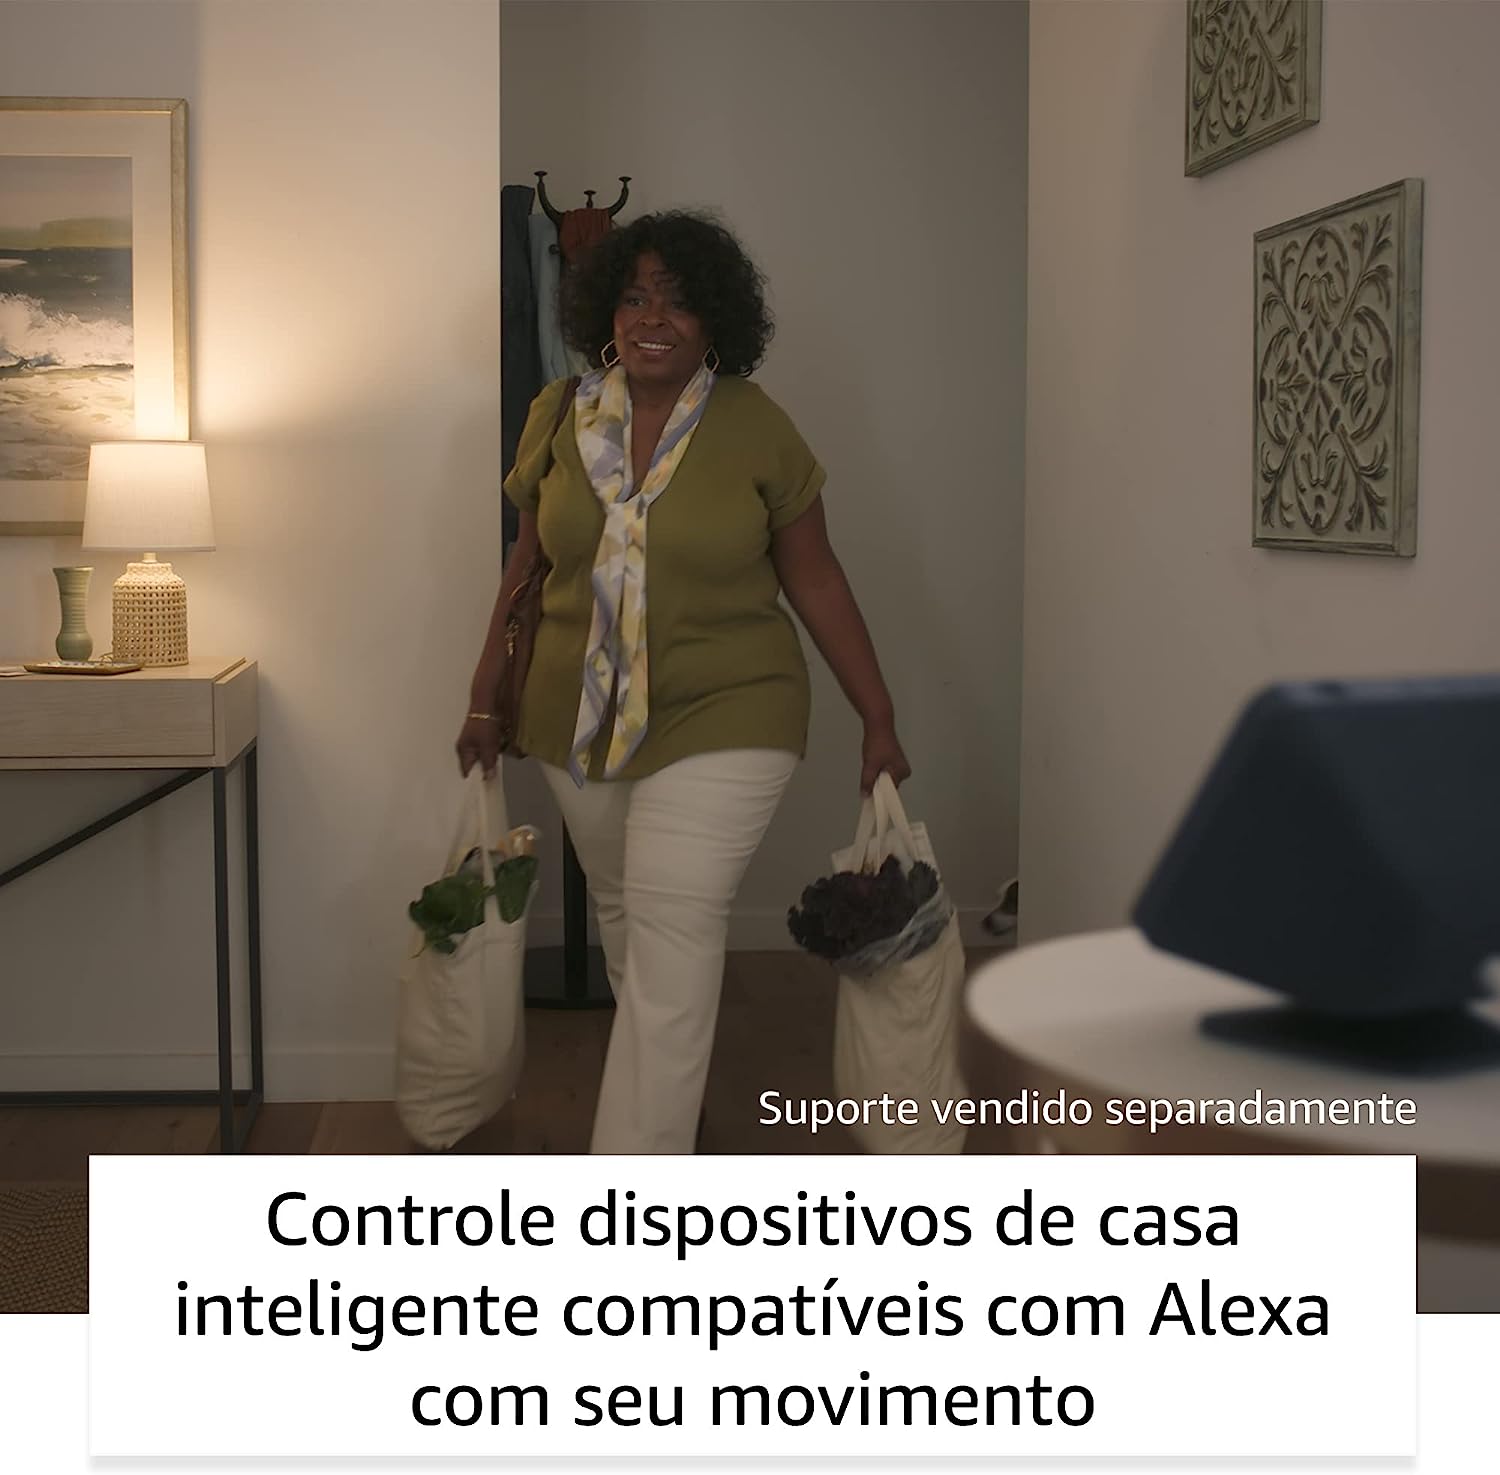 Alexa Echo Show 8 Geração - A Assistente Virtual Avançada para a sua Casa Inteligente!